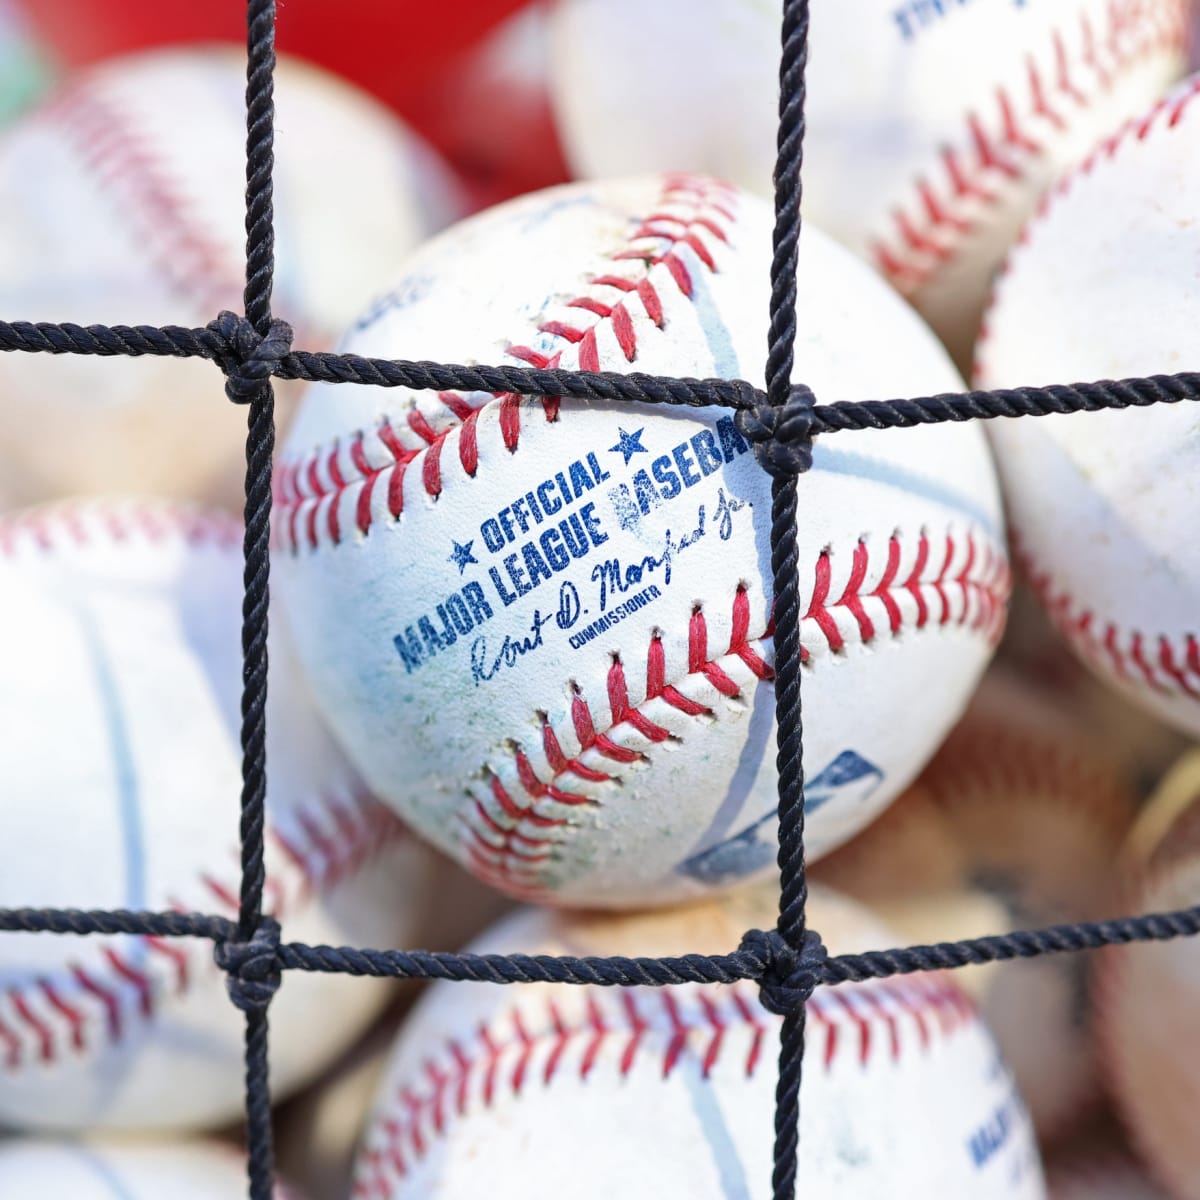 PHOTOS: Major League Baseball Opening Day 2022